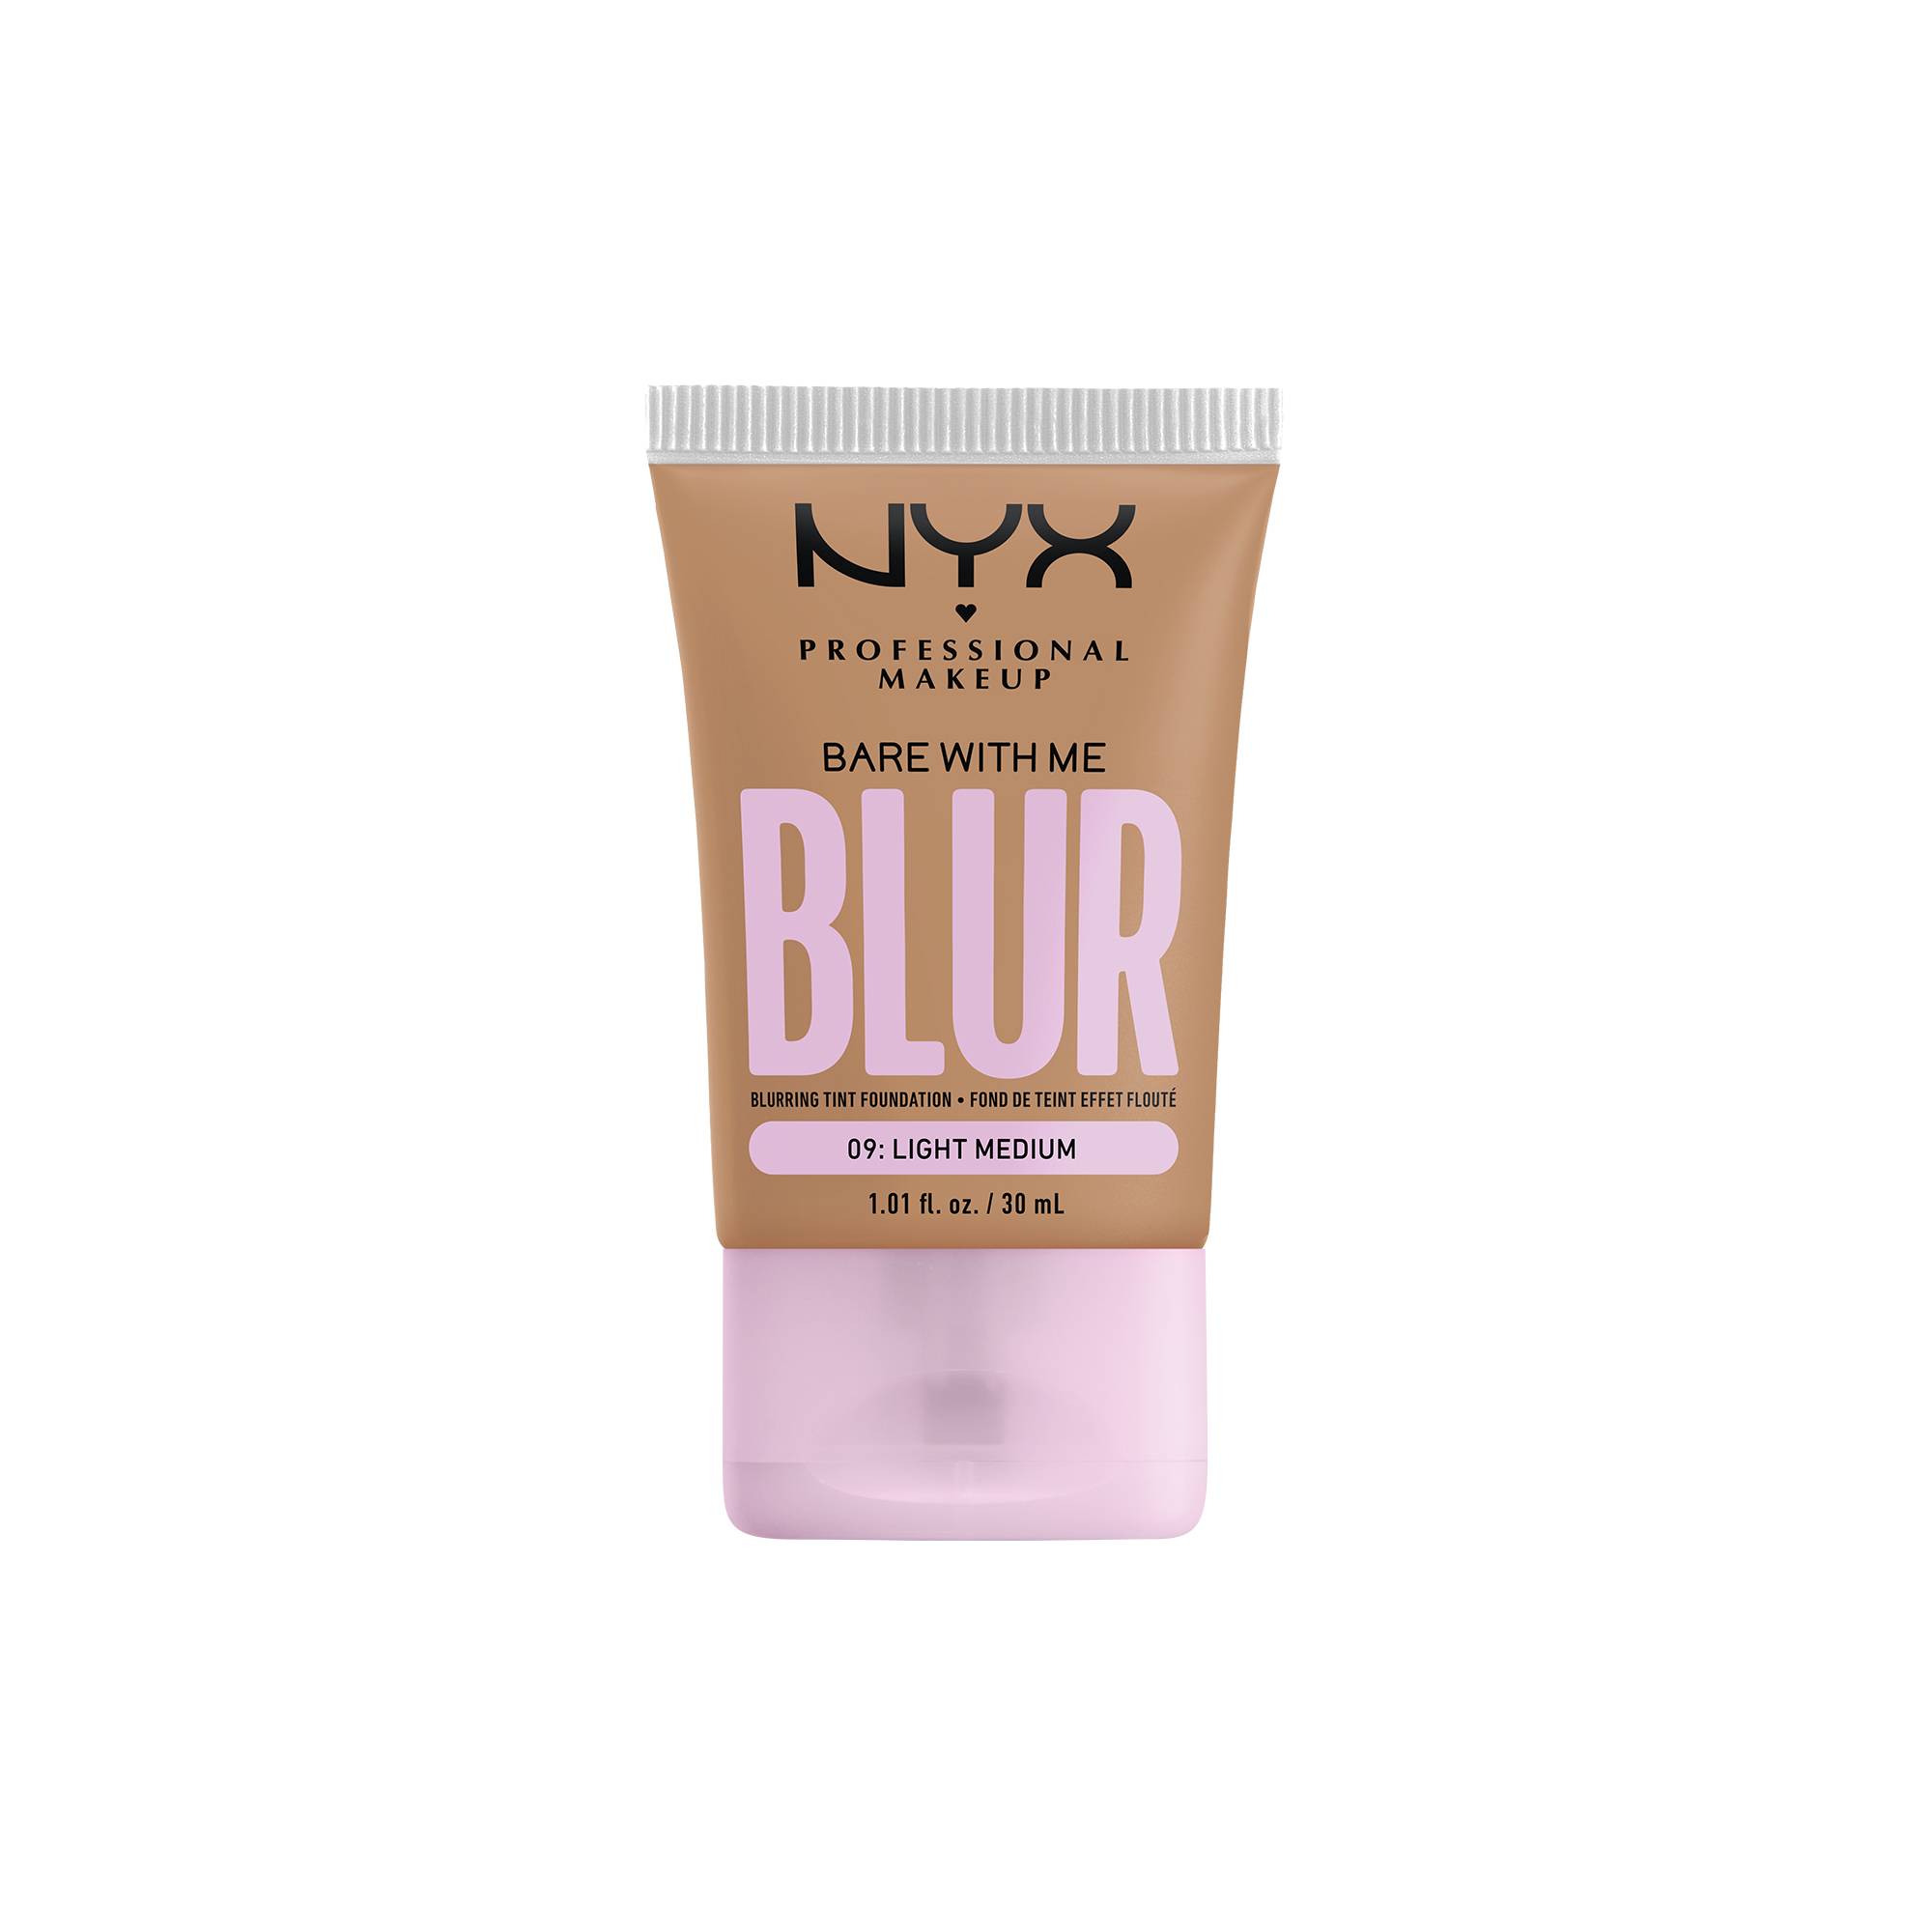 Fond de teint effet flouté Bare With Me Blur Light Medium de la marque NYX Professional Makeup - 1